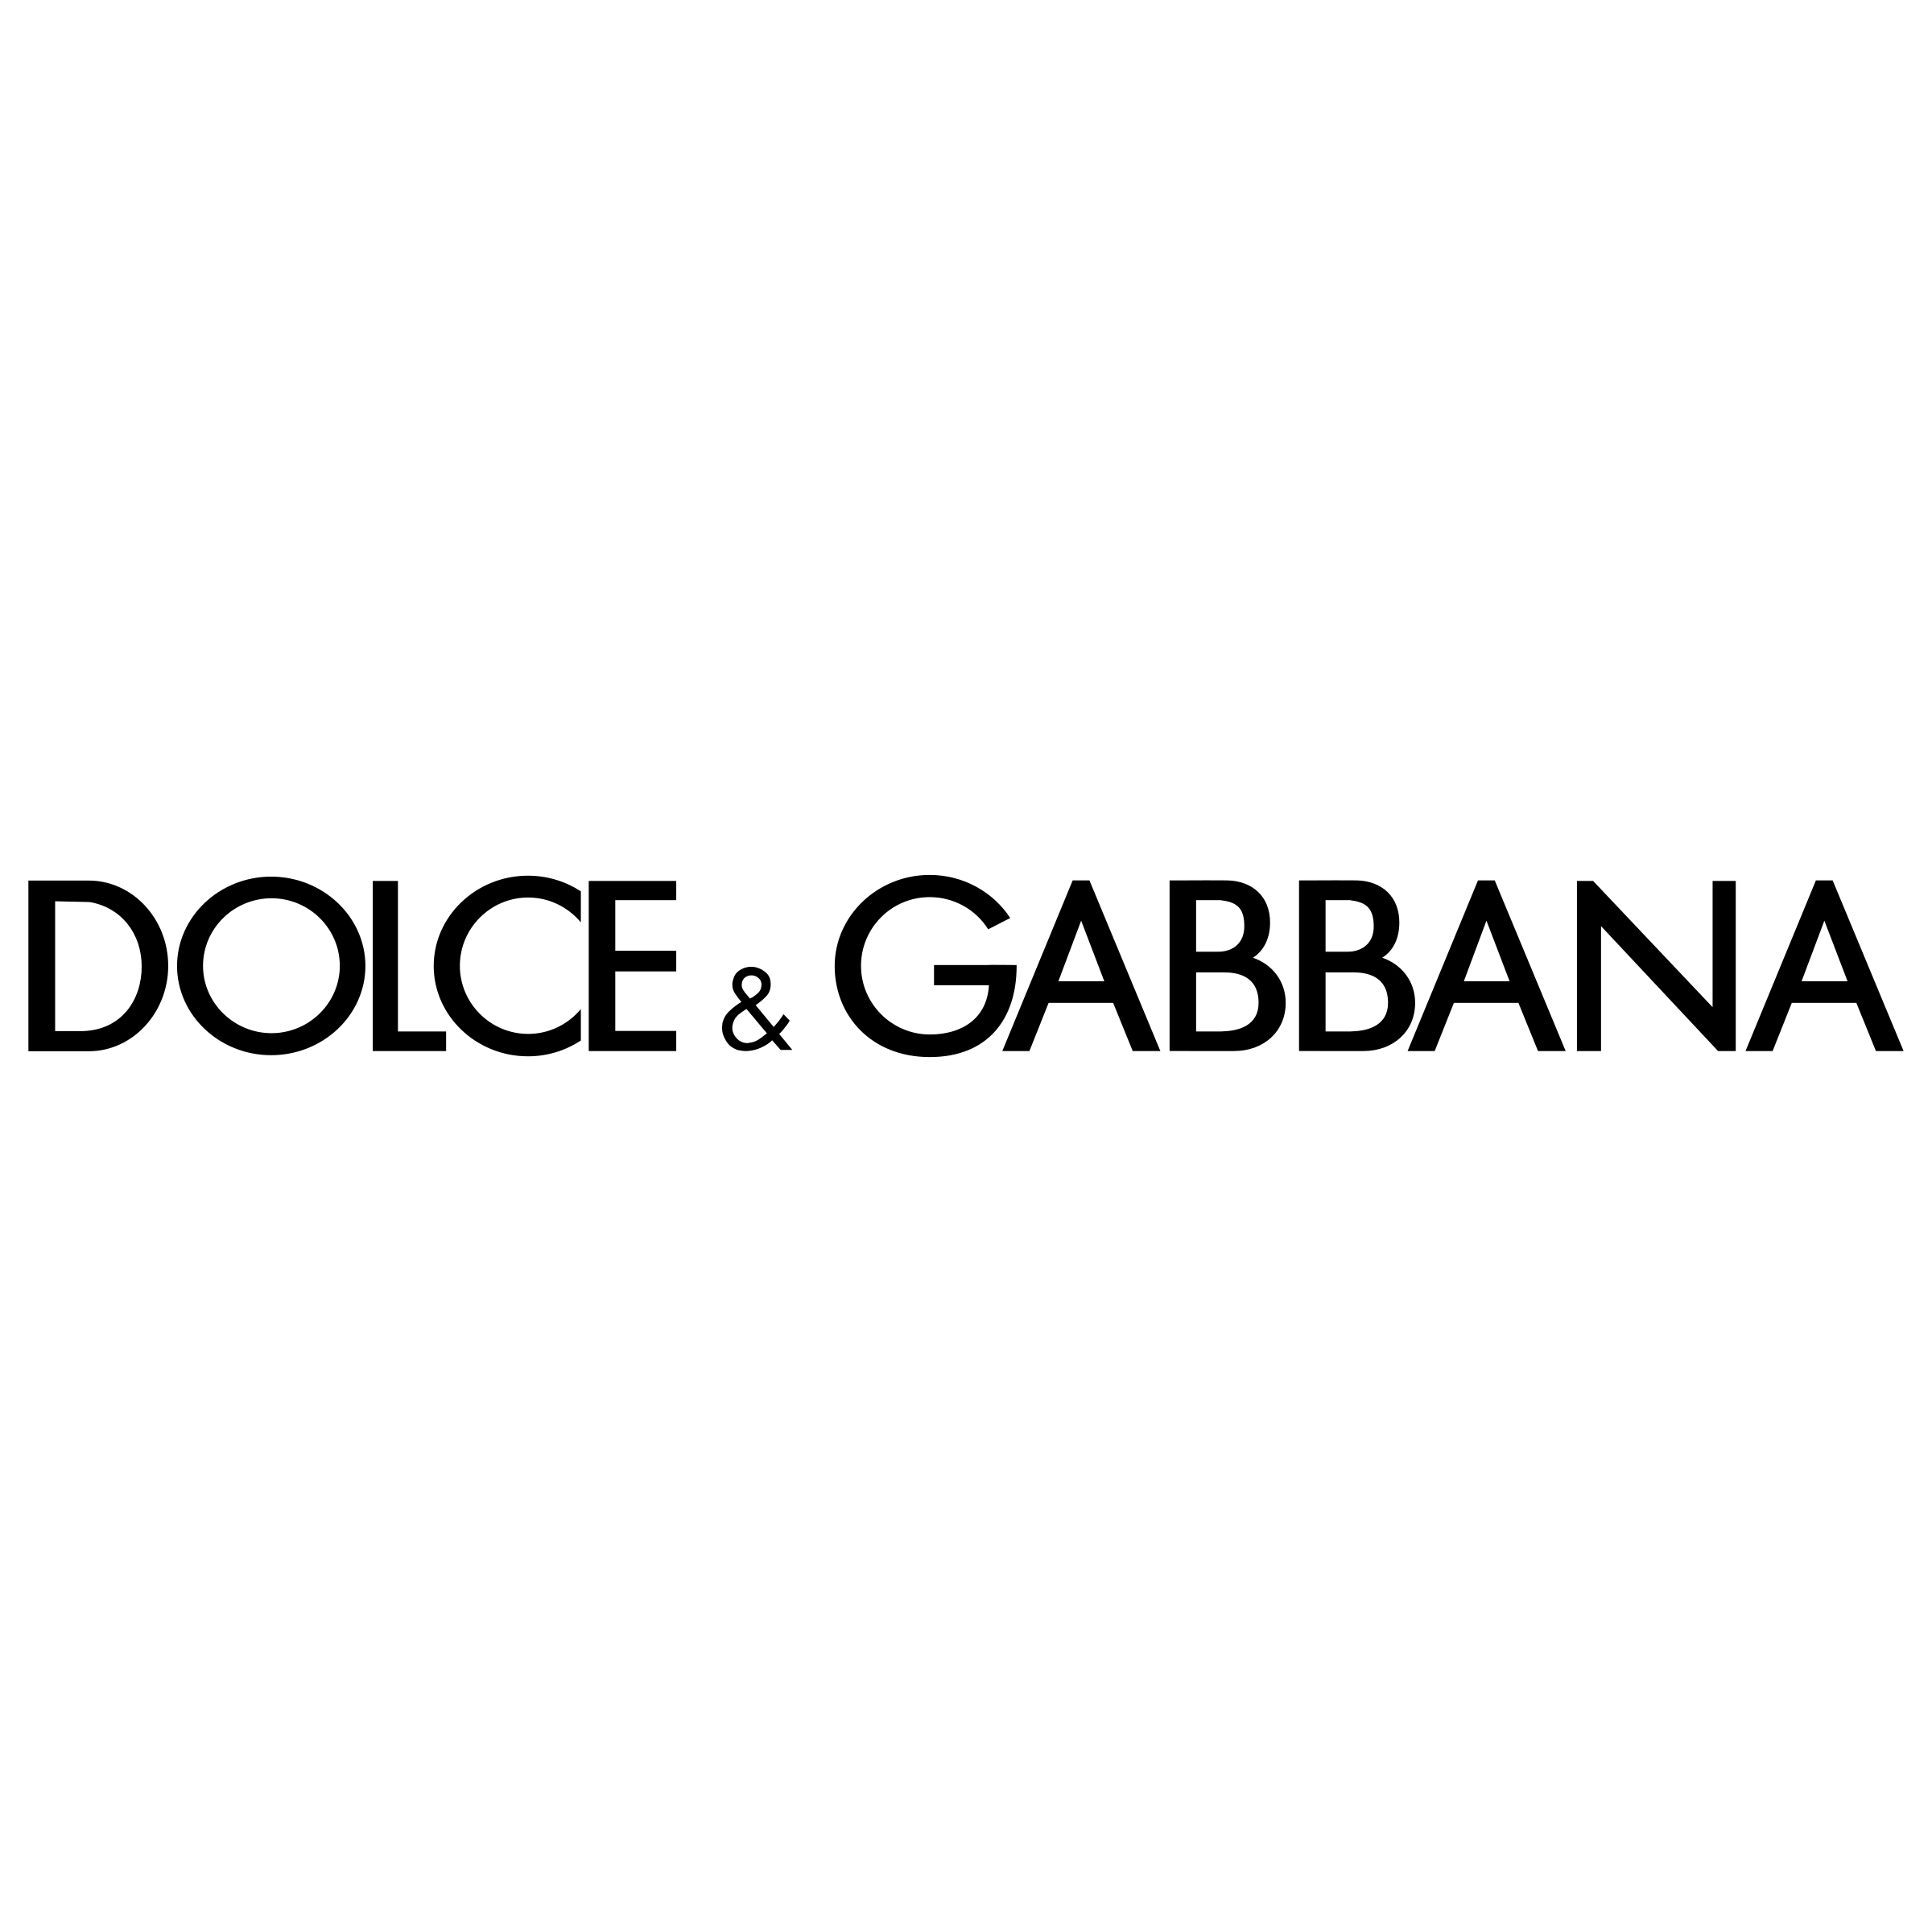 Logotipo da Dolce & Gabbana